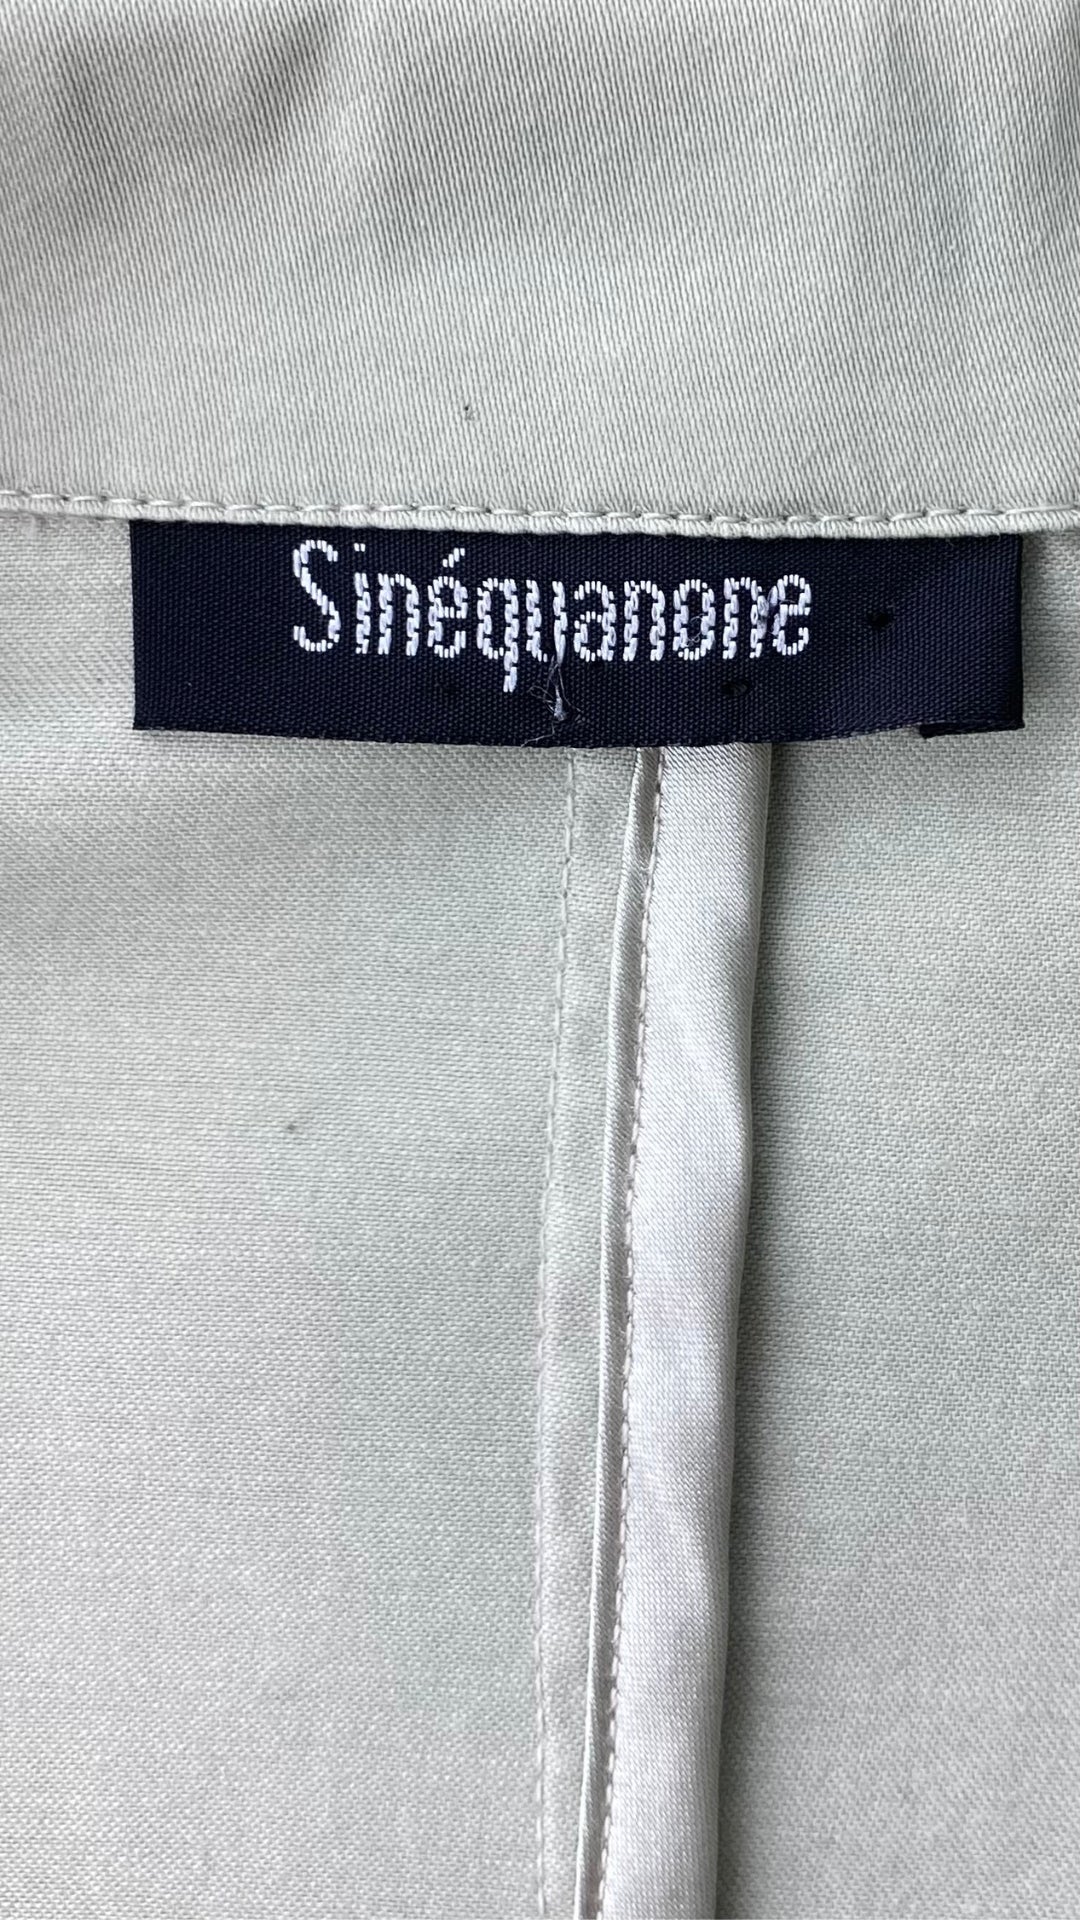 Veston court de couleur sauge, marque Sinéquanone, taille 40 (small-médium). Vue de l'étiquette de la marque.